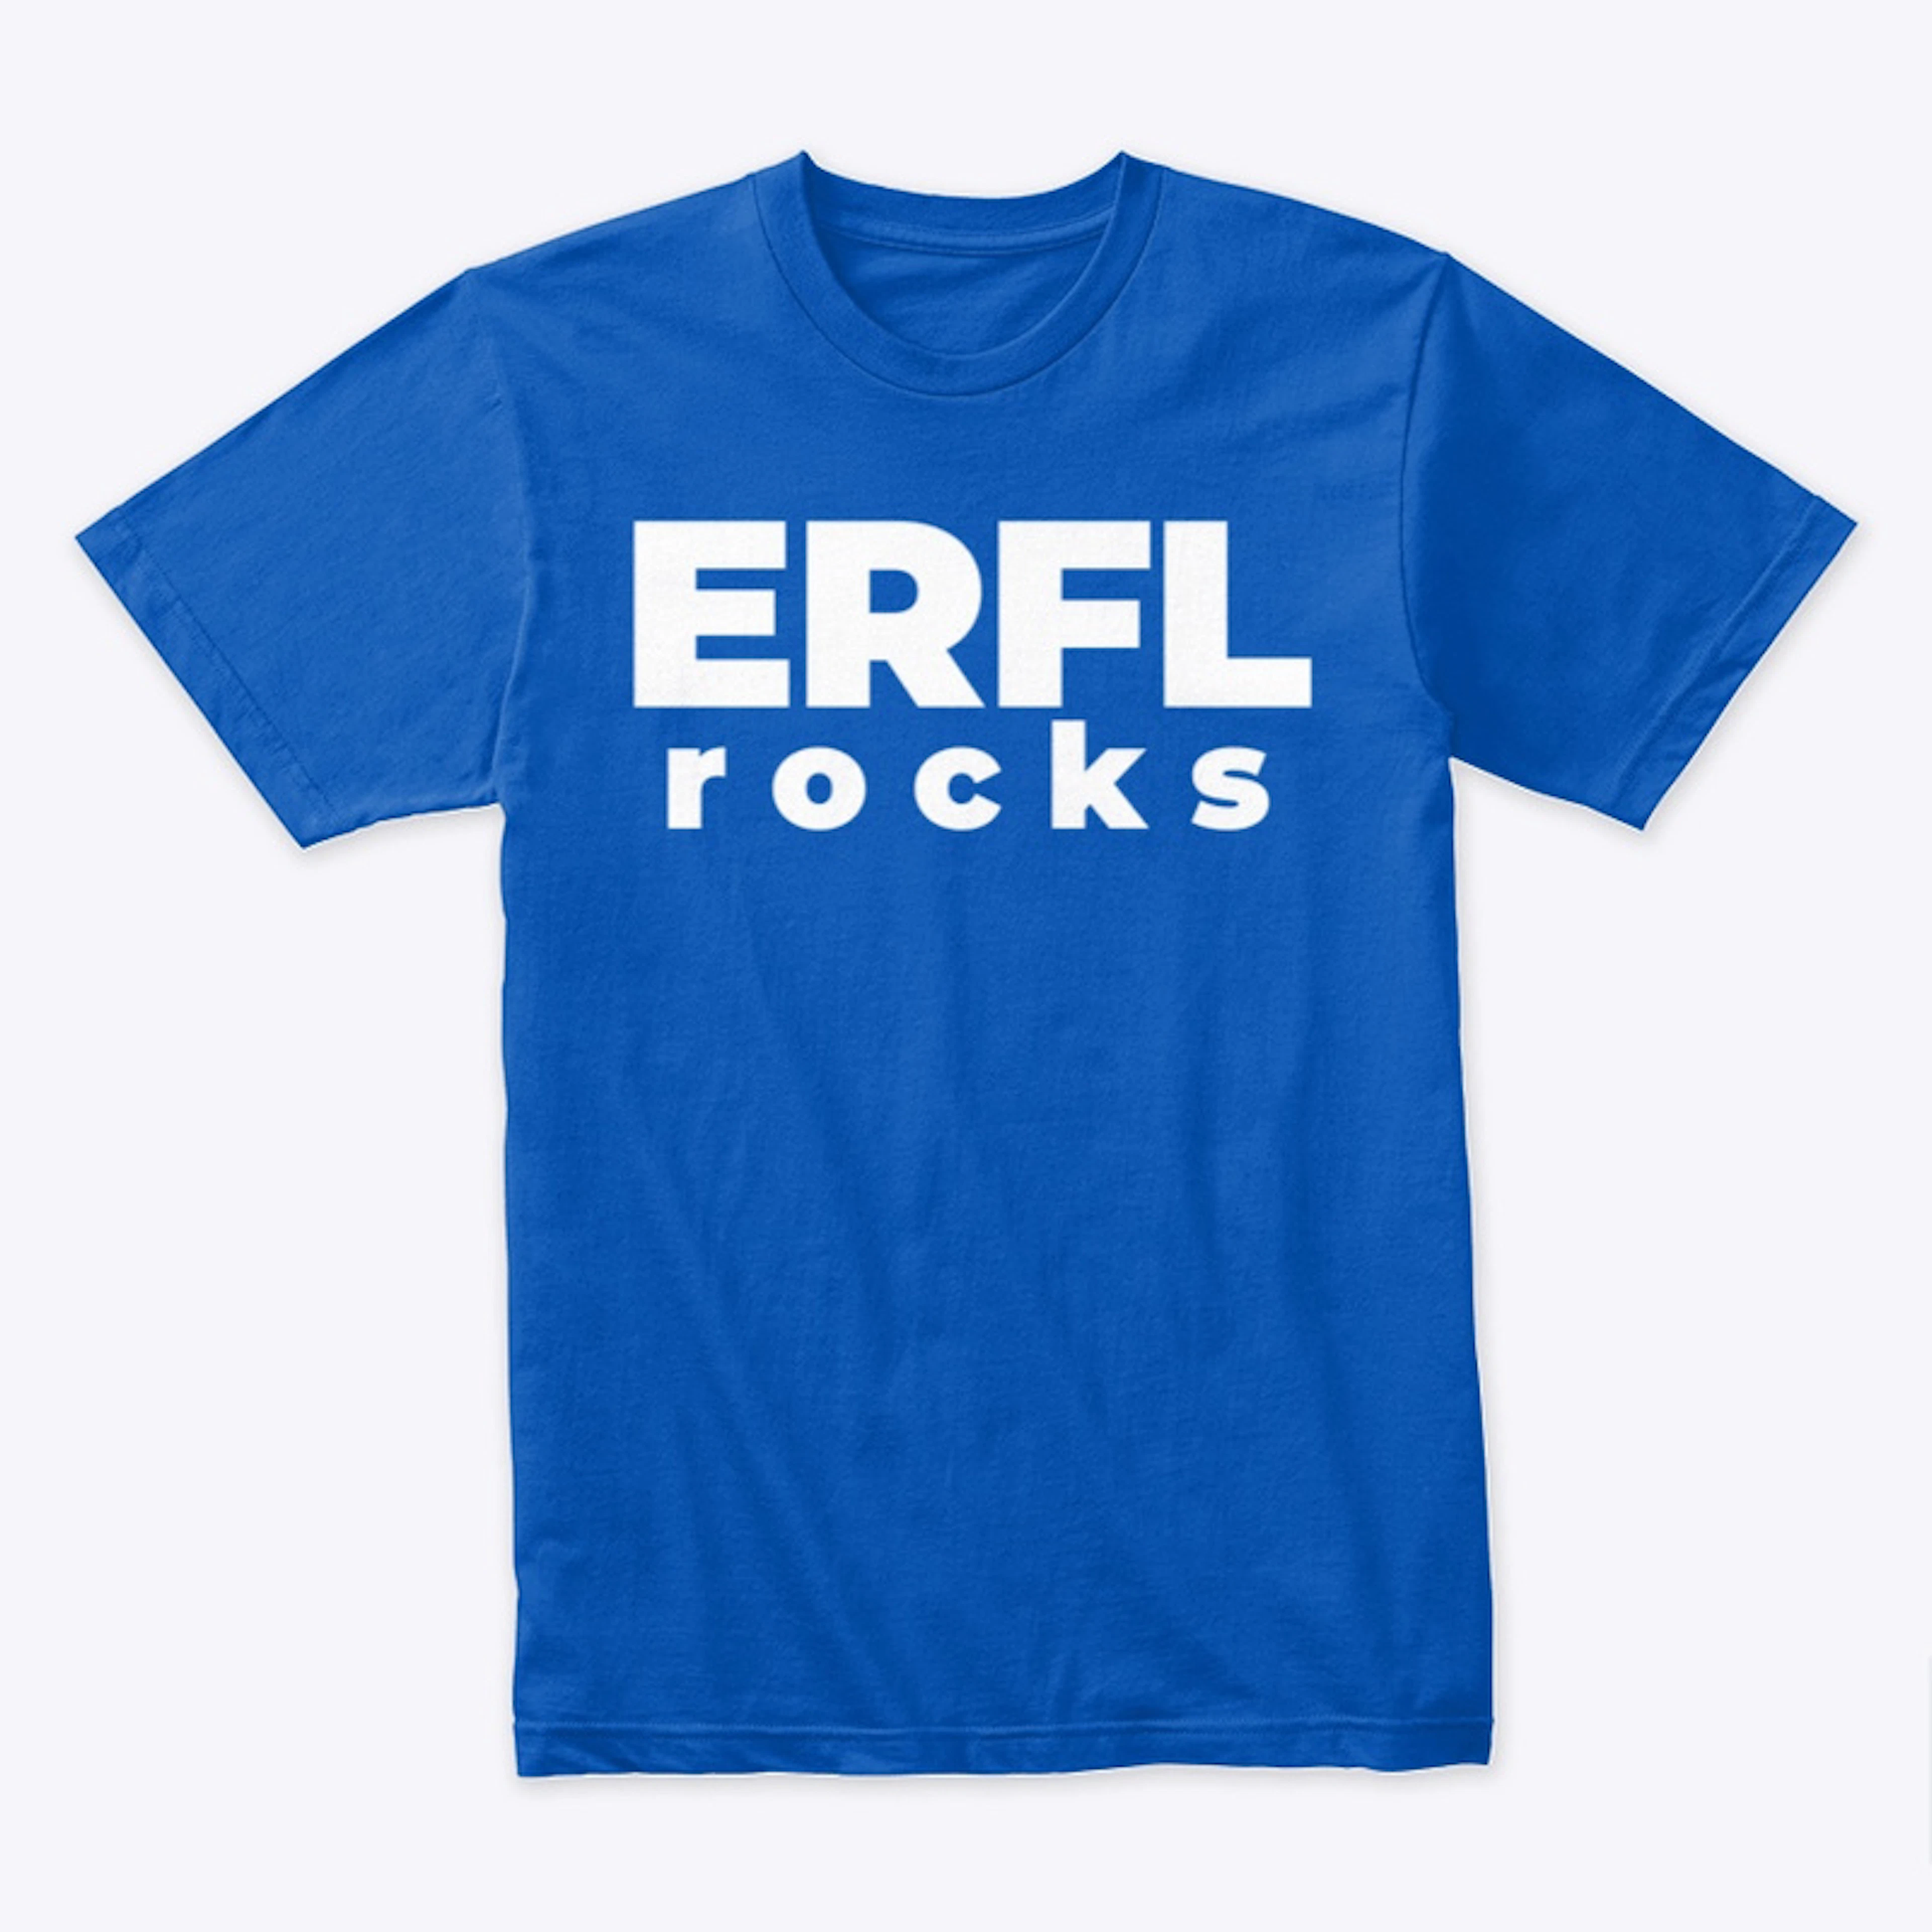 ERFL rocks